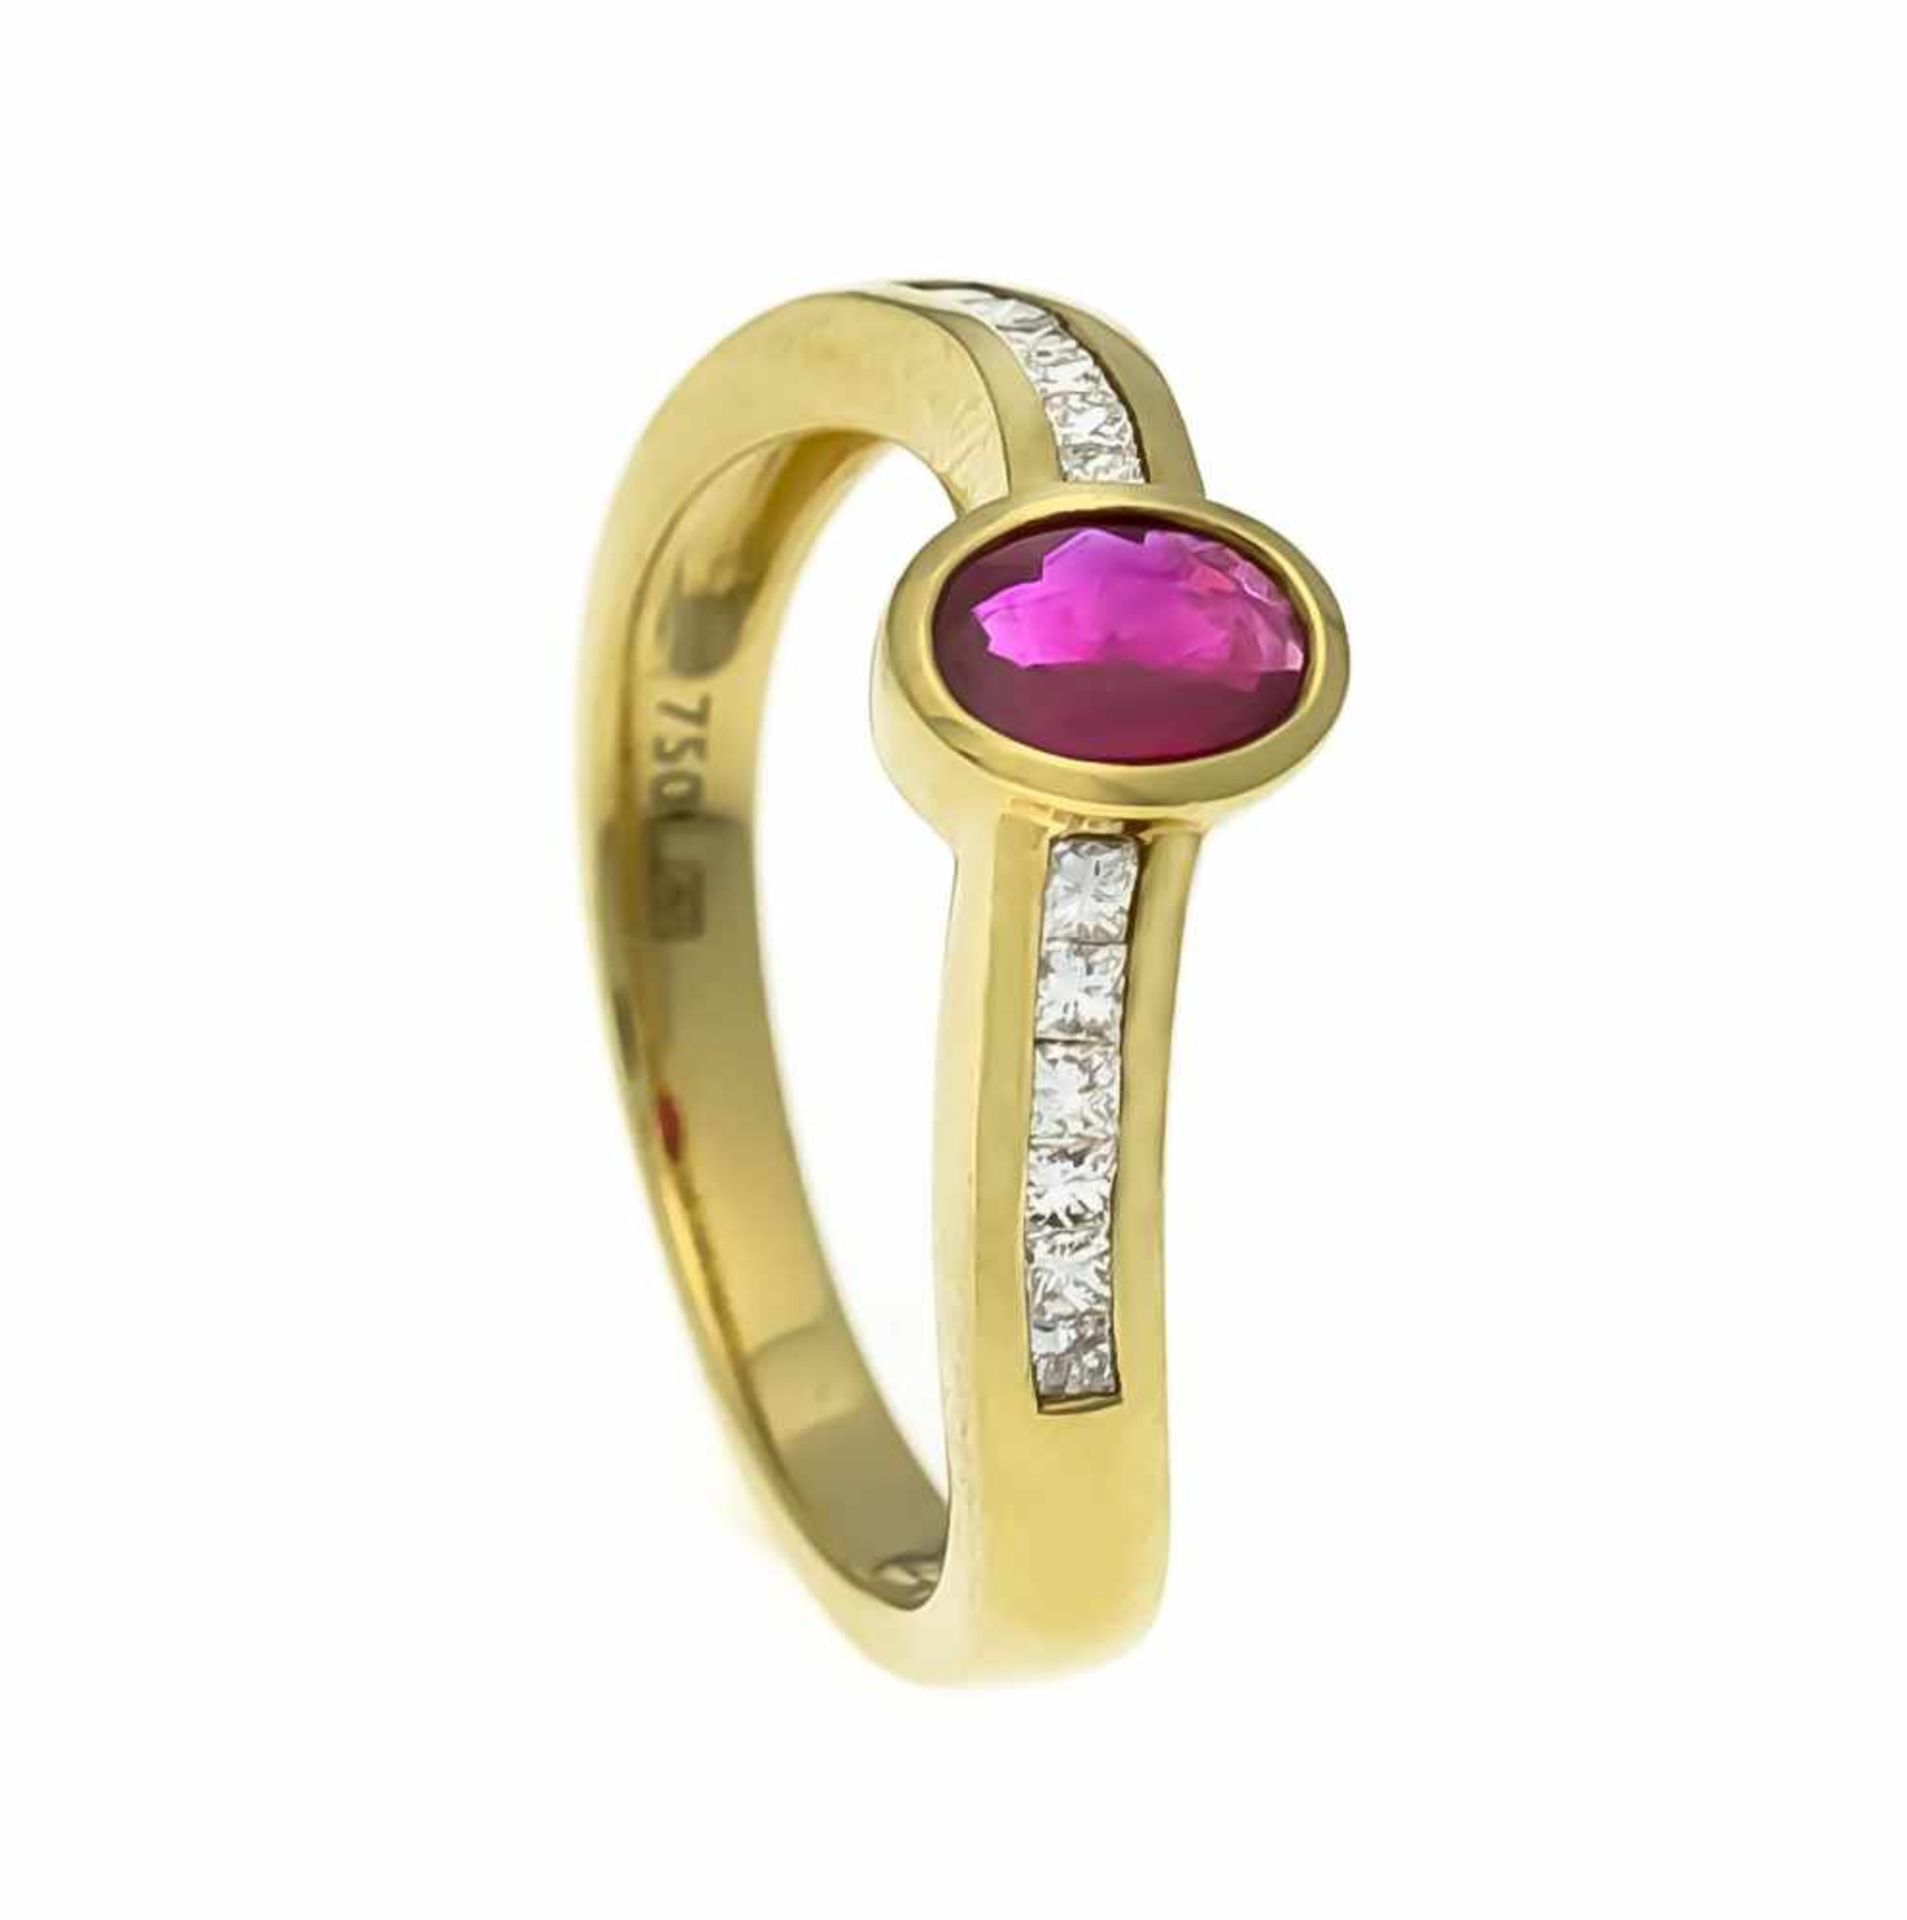 Rubin-Brillant-Ring GG 750/000 mit einem oval fac. Rubin 6,2 x 4,5 mm in einem leichtbläulichen Rot/